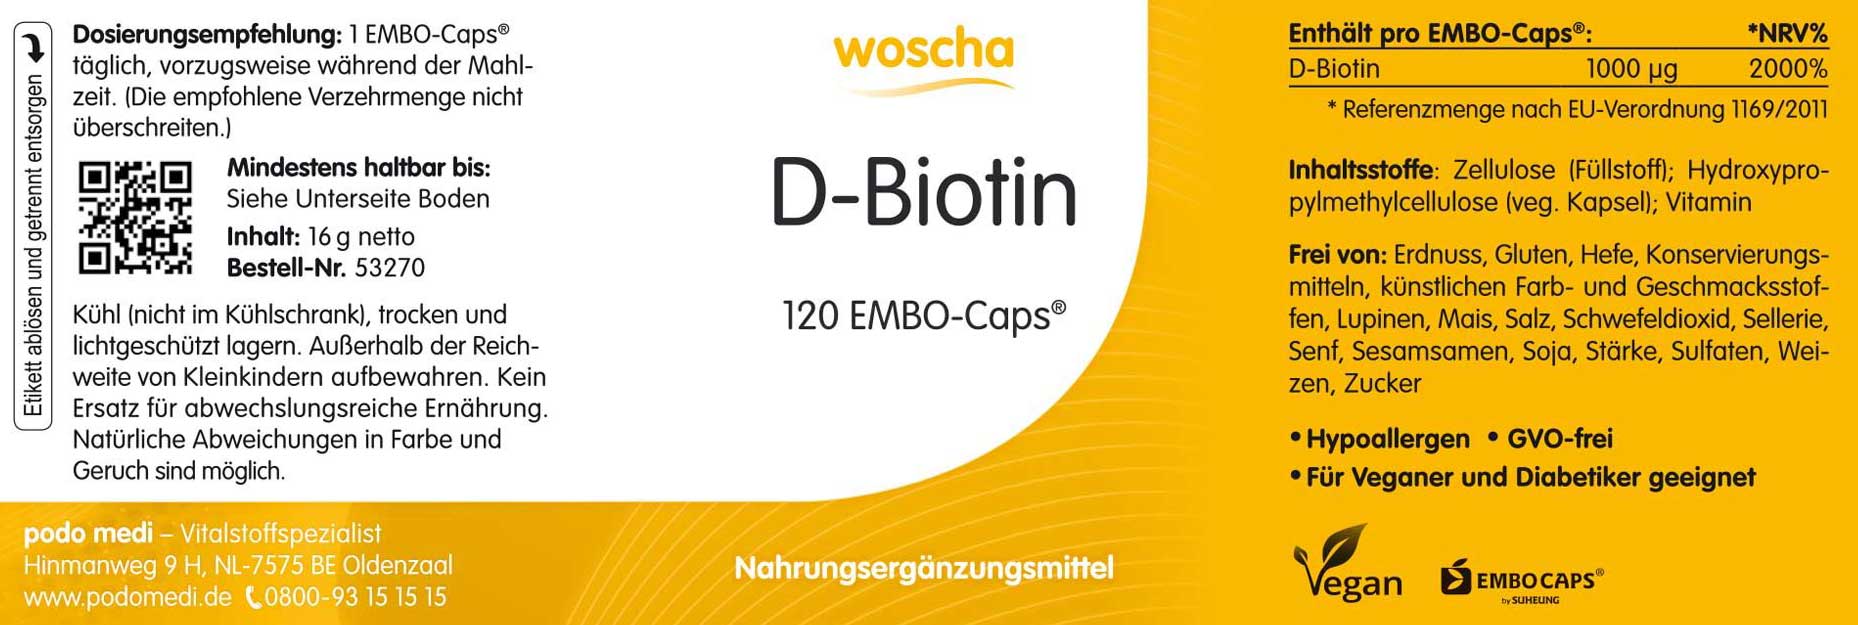 Woscha D-Biotin von podo medi beinhaltet 120 Kapseln Etikett